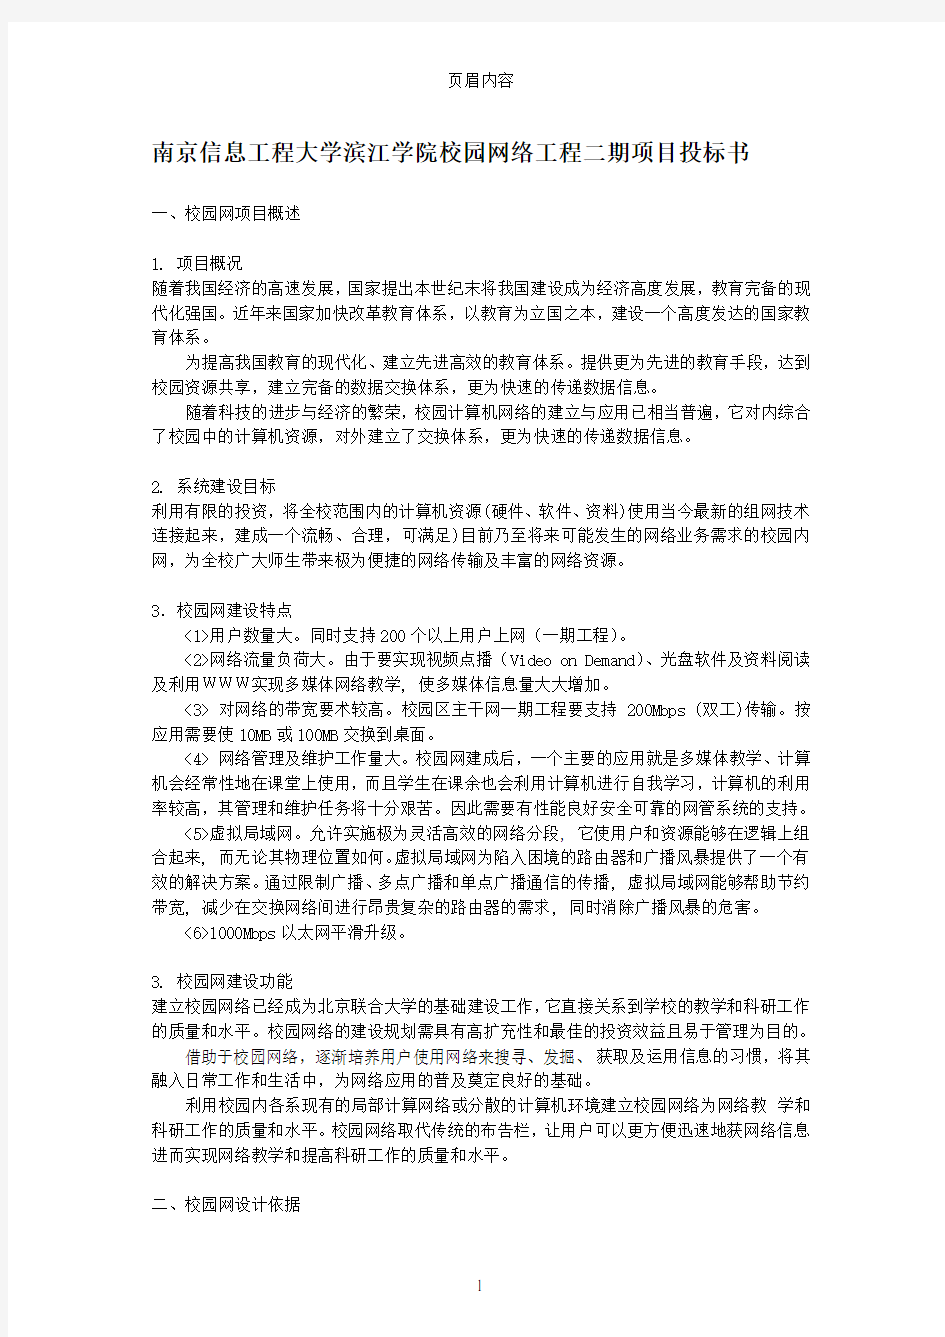 南京信息工程大学滨江学院校园网络工程二期投标书